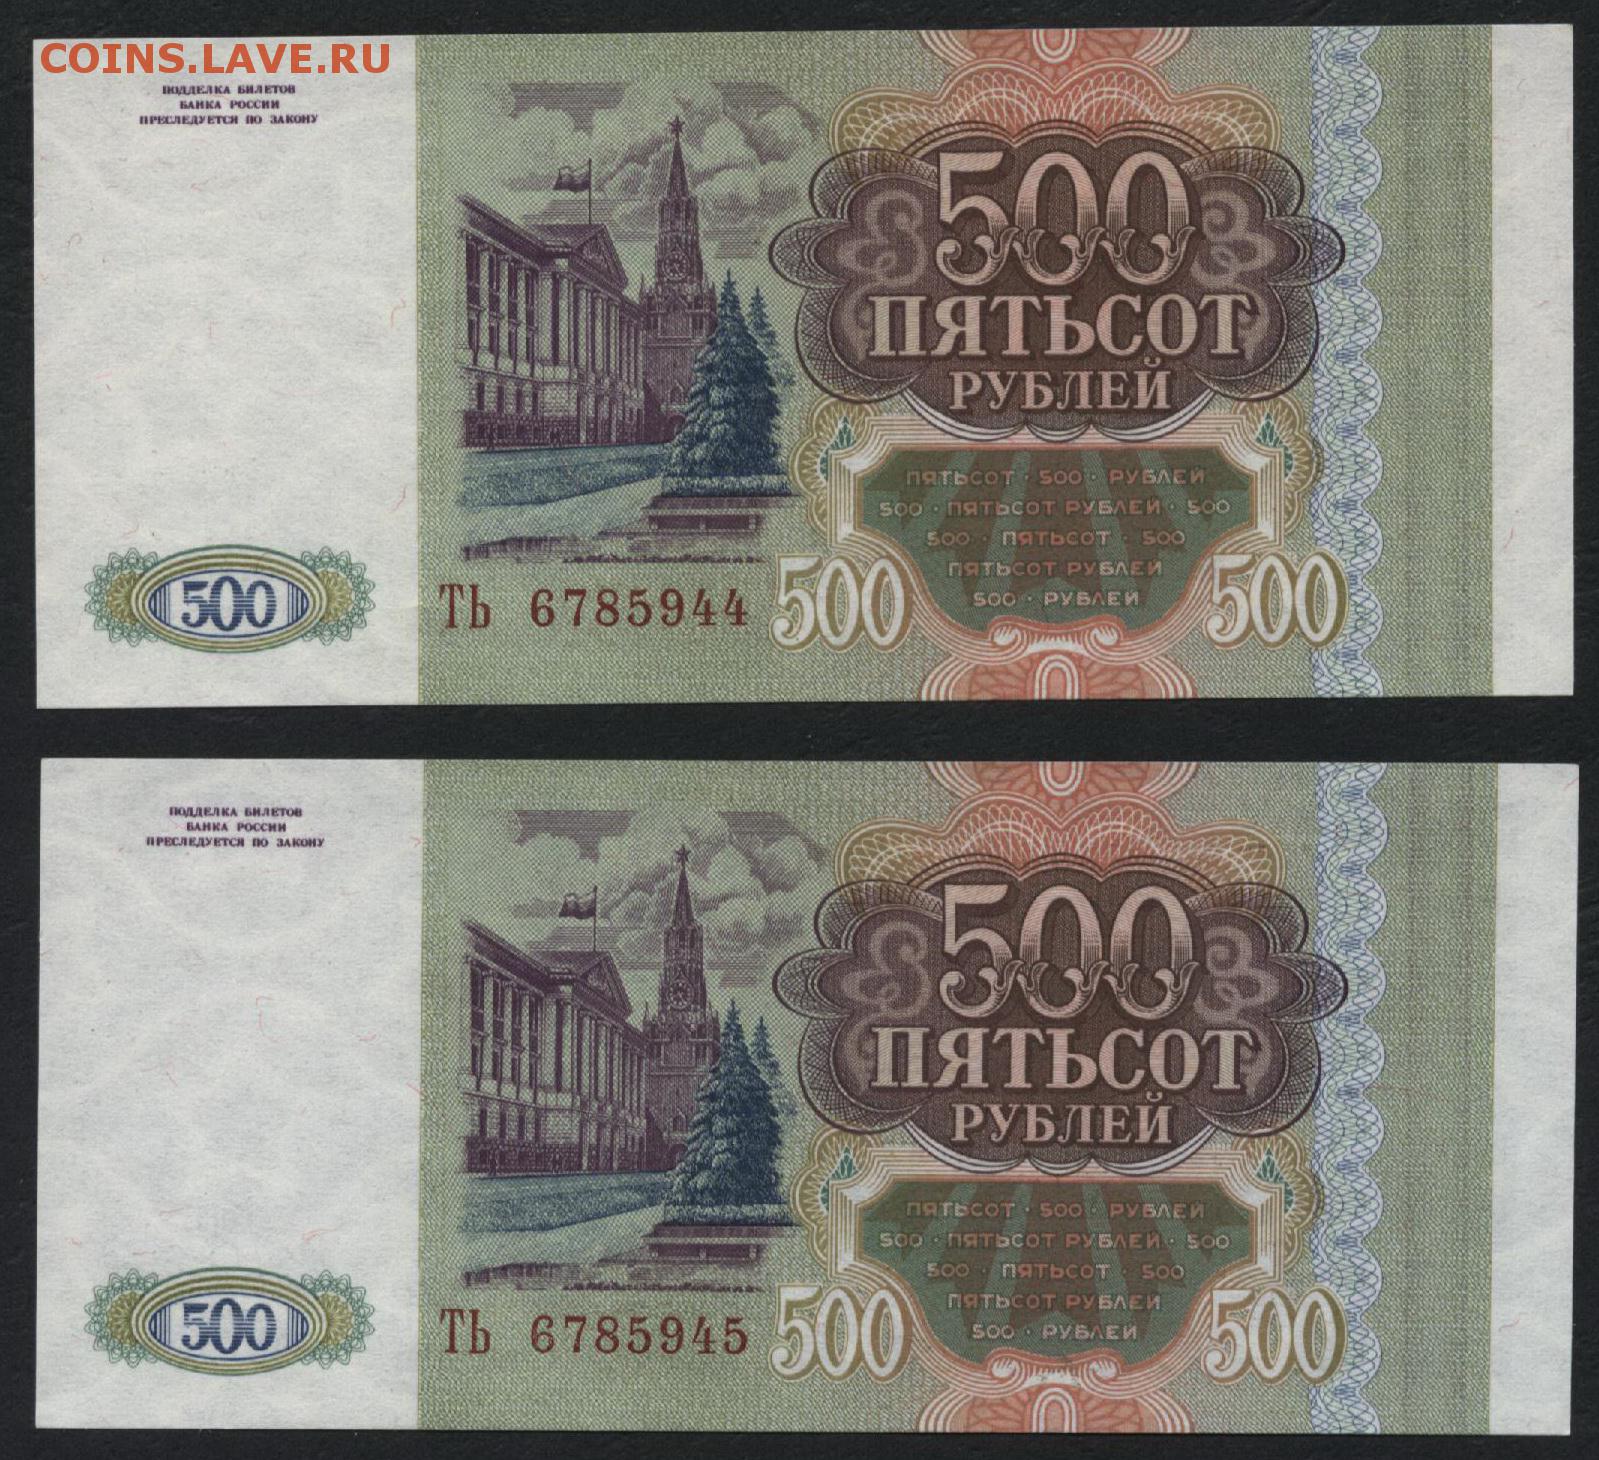 31 500 в рублях. 500 Рублей. 500 Рублей 1993. Пятьсот рублей 1993. 500 Рублей 1993 года.